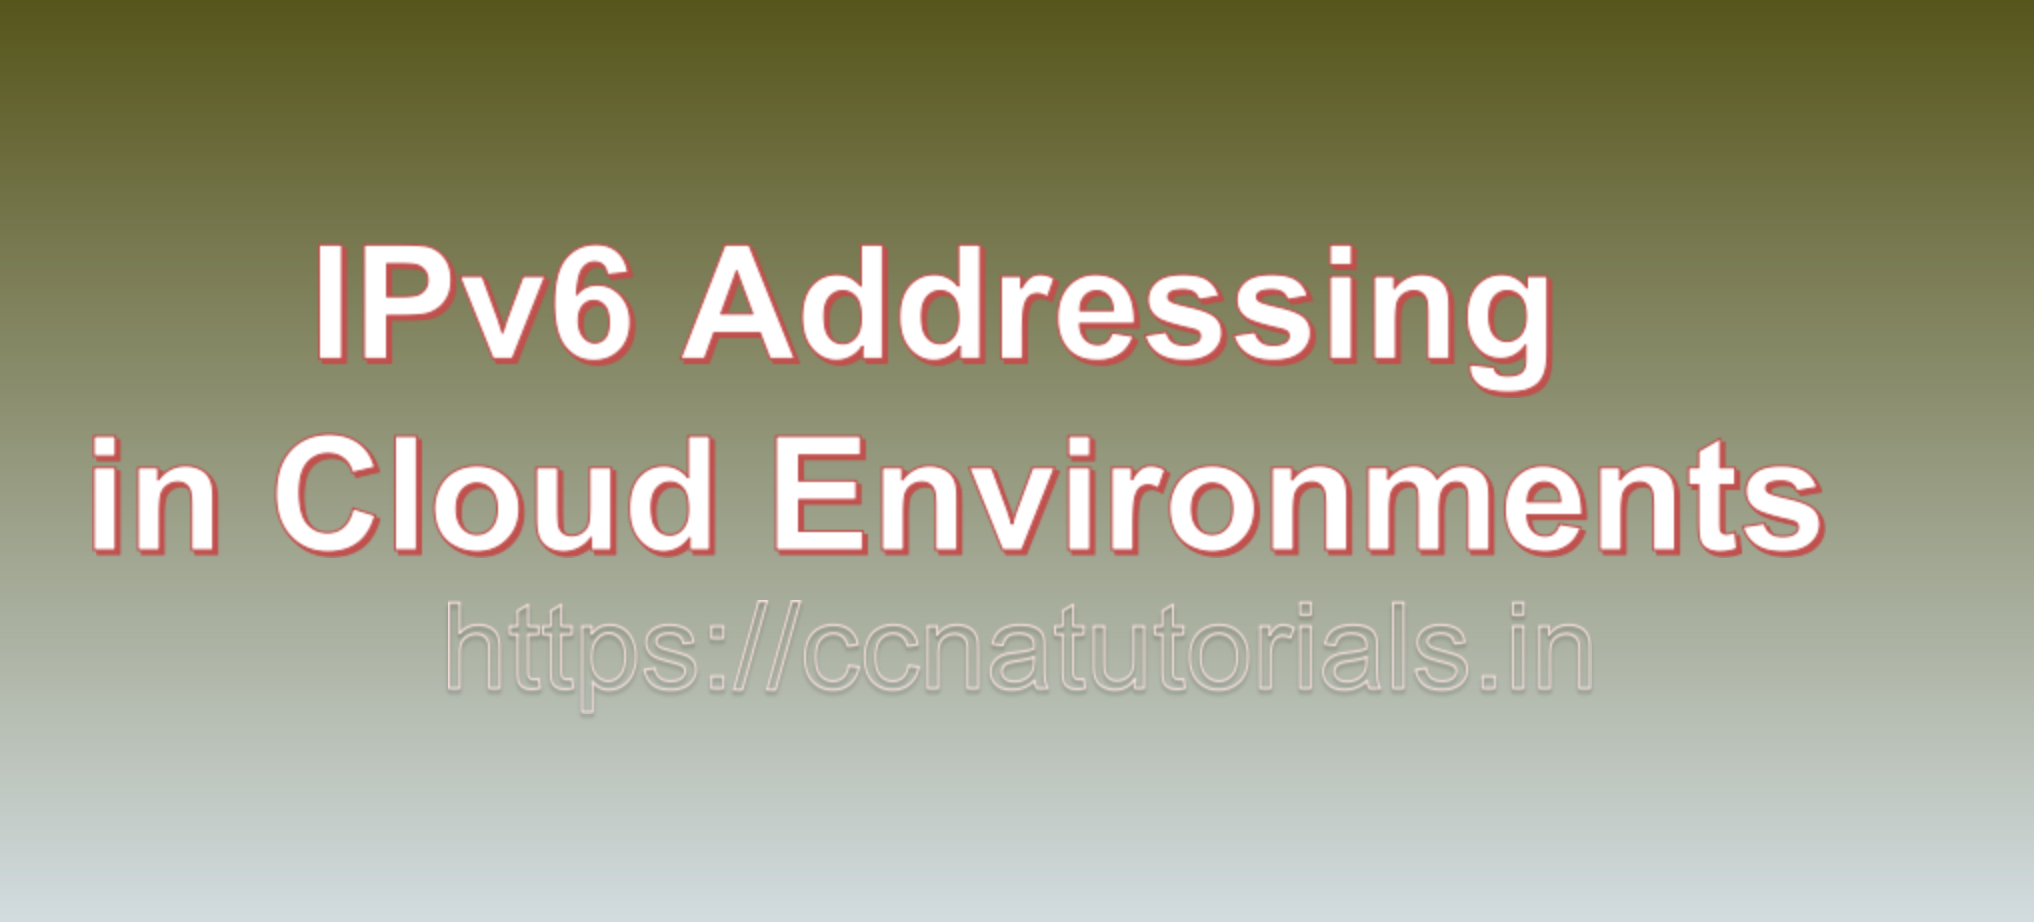 IPv6 Addressing in Cloud Environments, ccna, ccna tutorials